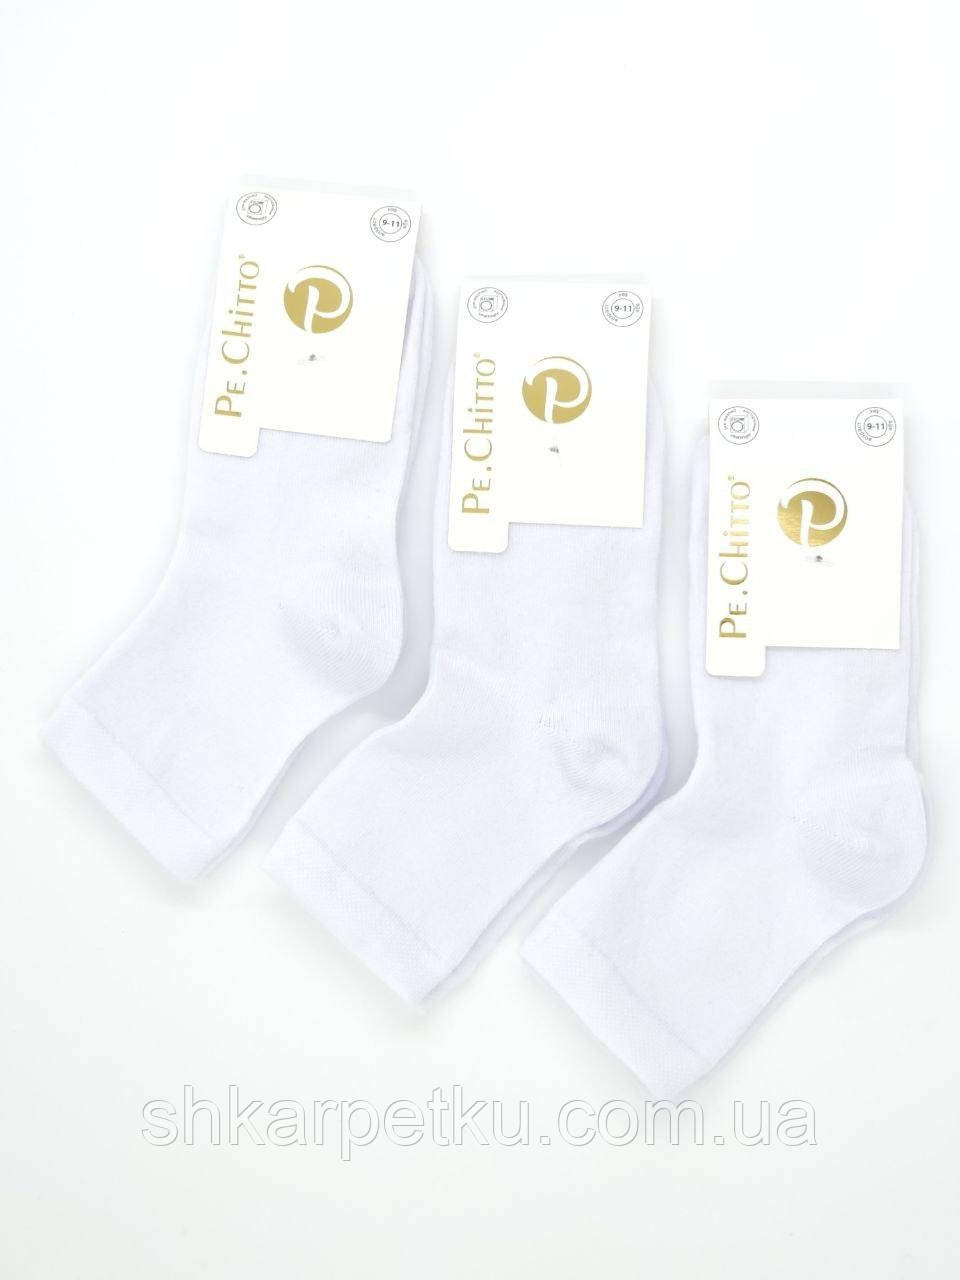 Дитячі шкарпетки середні Pe.Chito бавовна унісекс 12 пар/уп білі